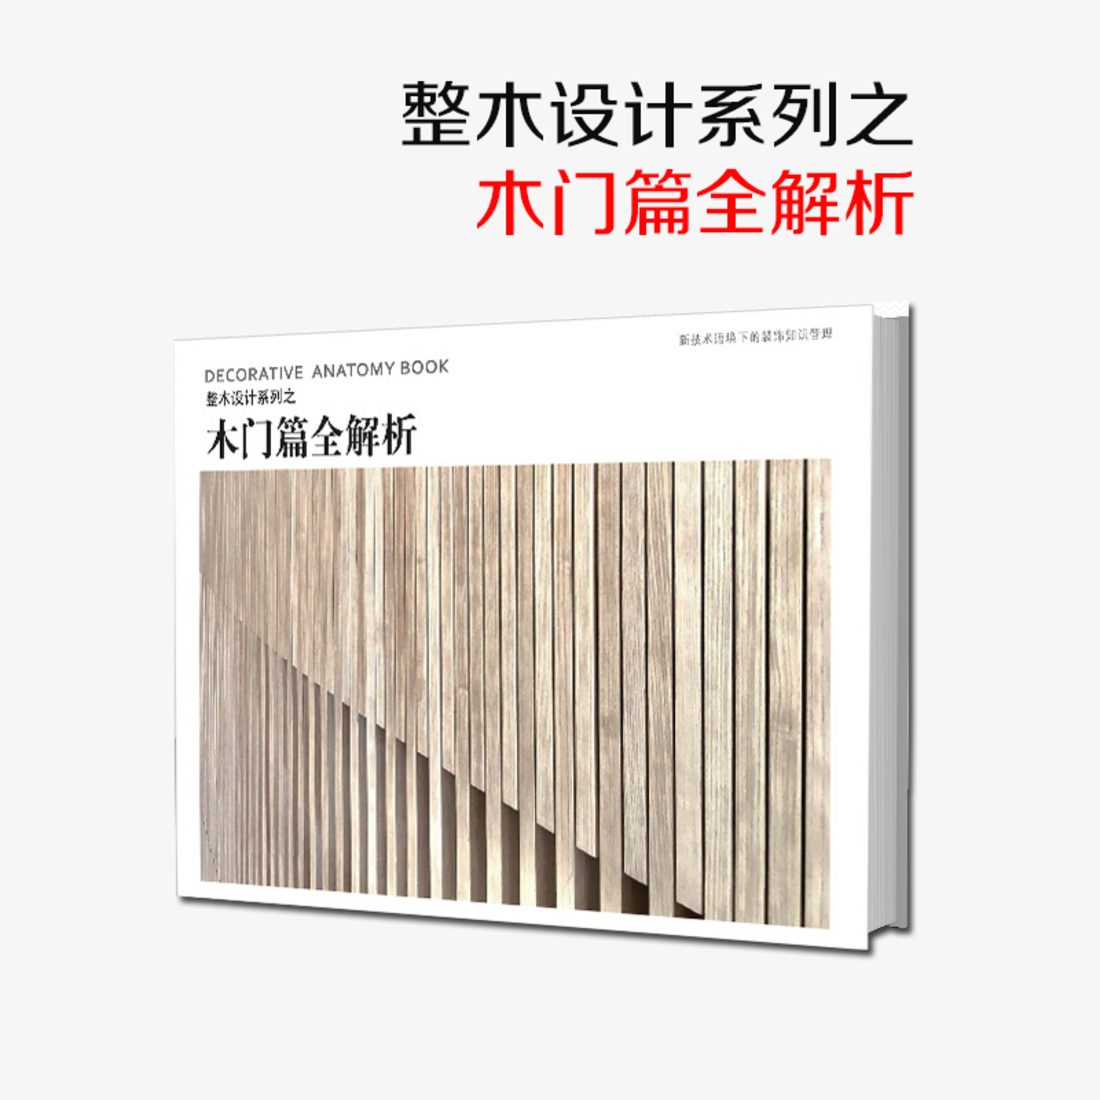 《整木设计系列之木门篇全解析》-- 一本书了解家装工装木门构造节点